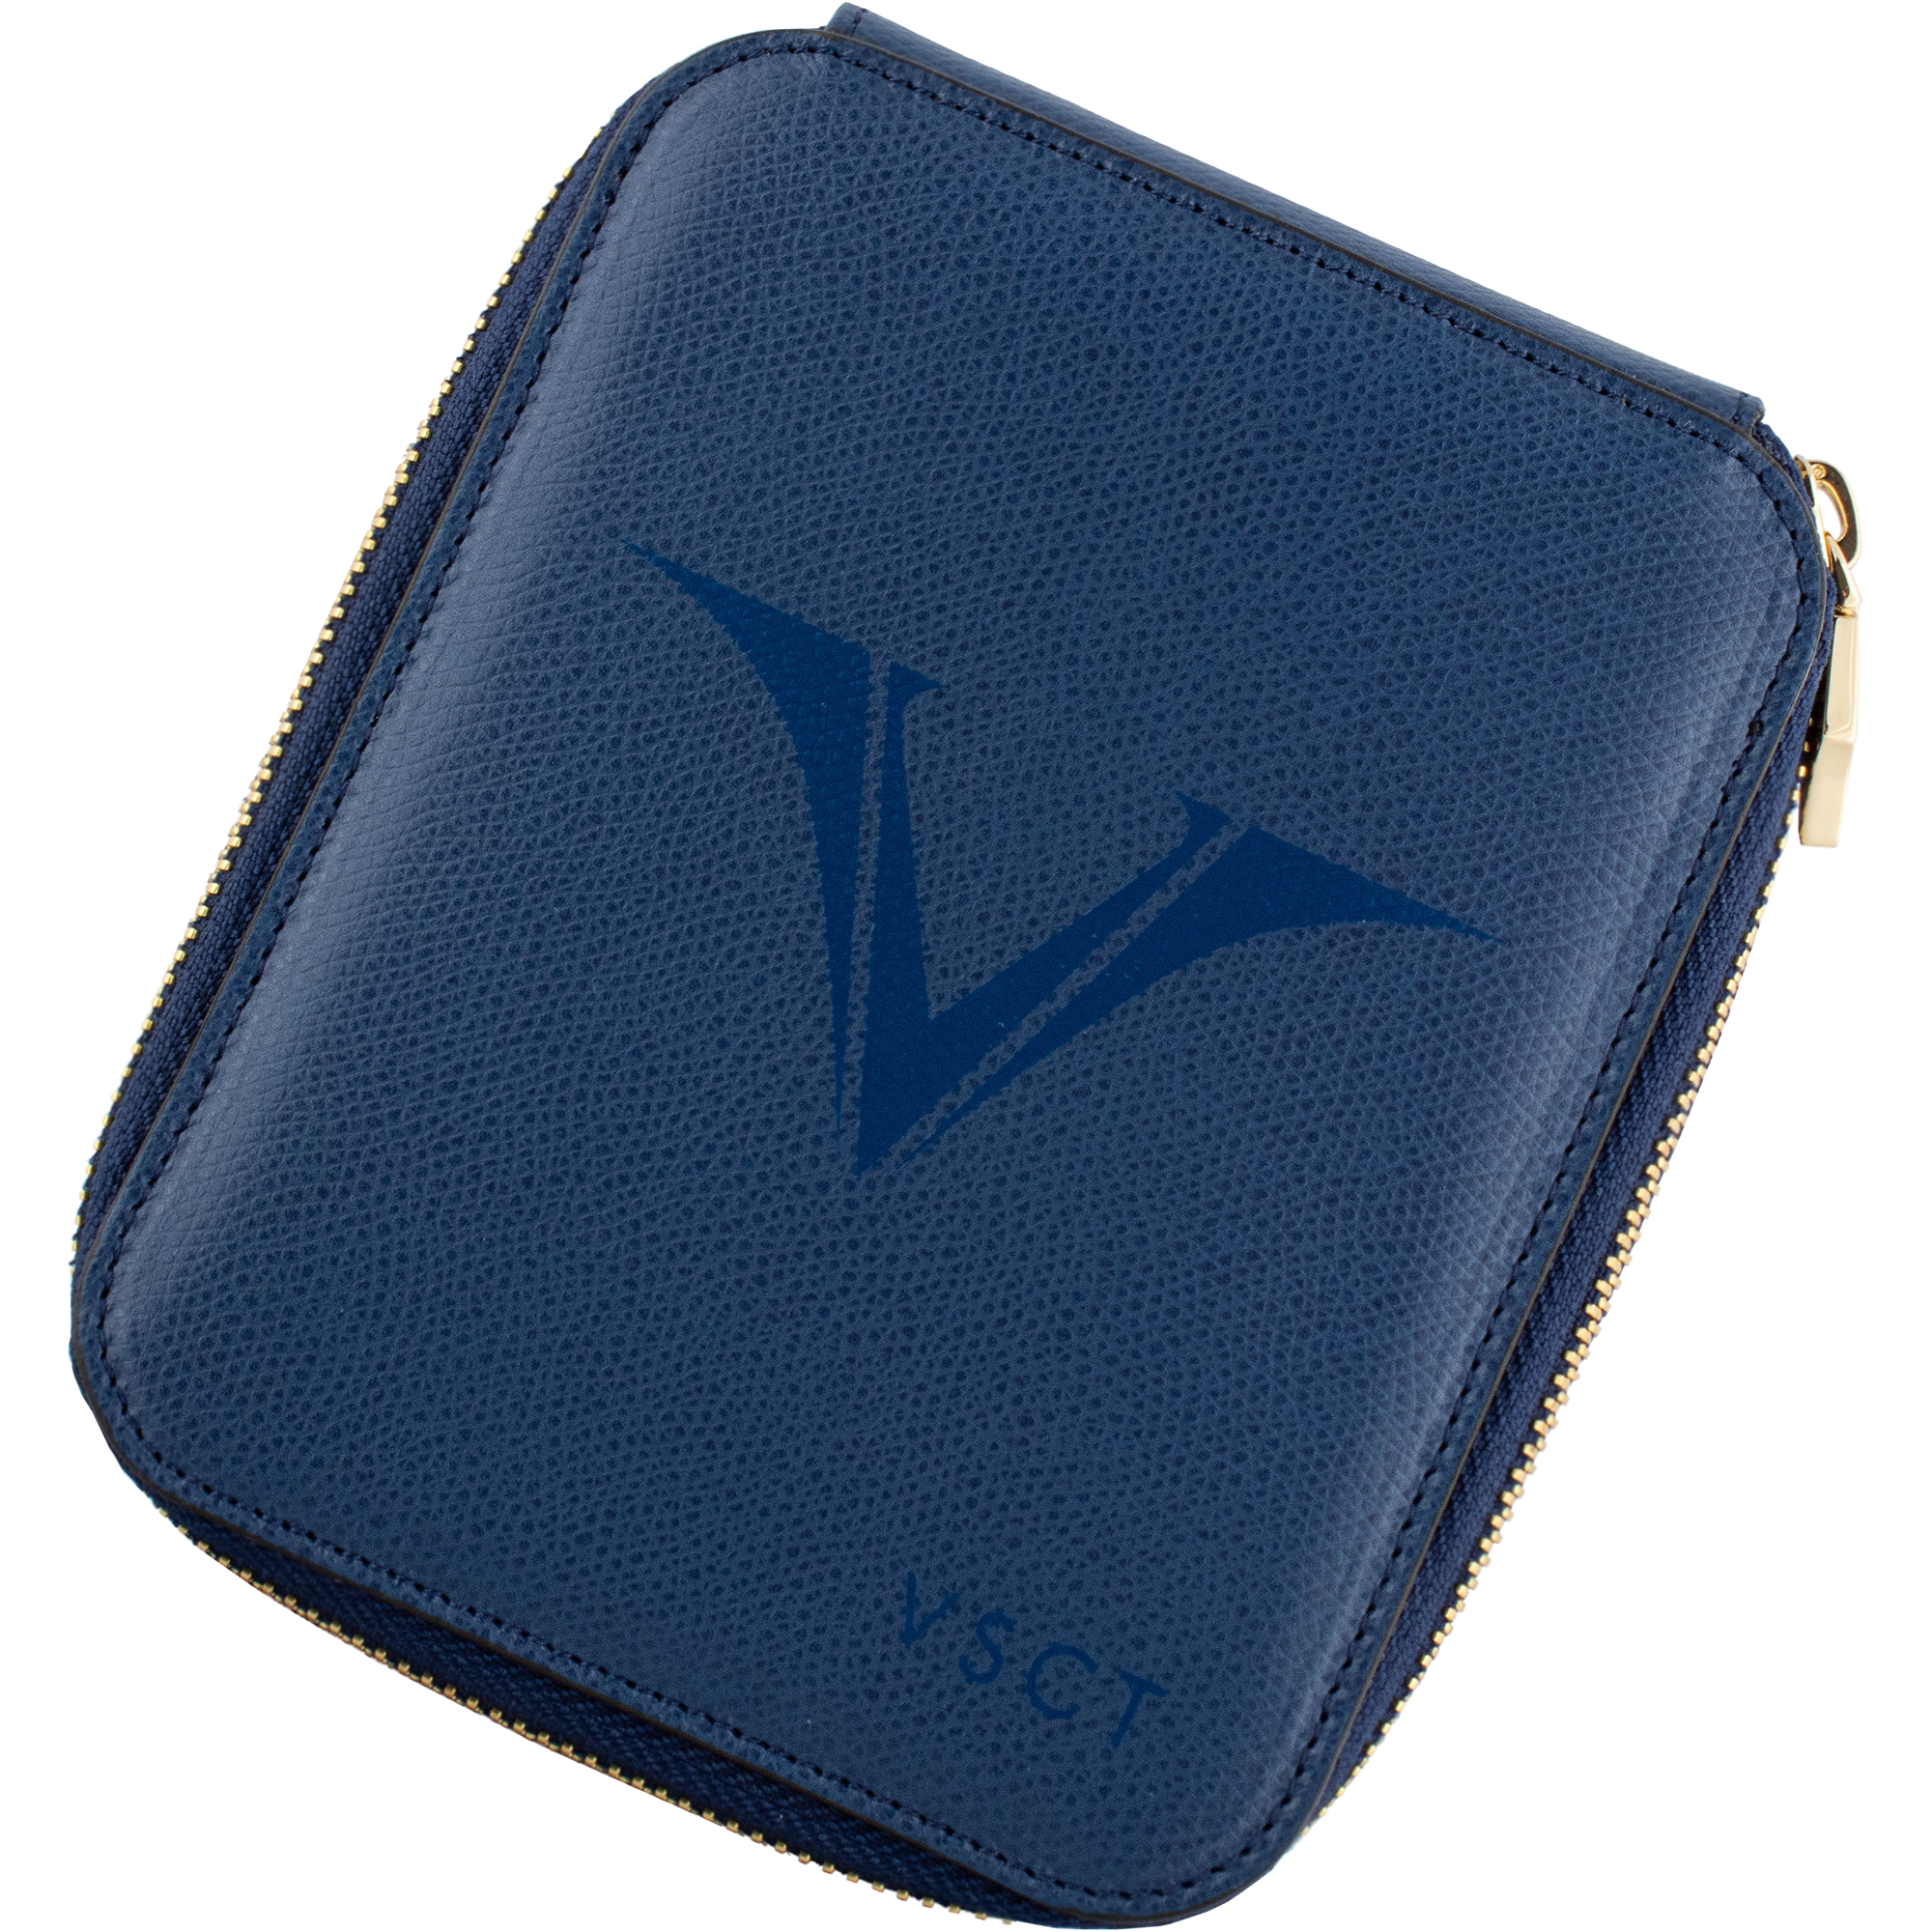 Visconti VSCT Six Pen Holder-Pen Boutique Ltd